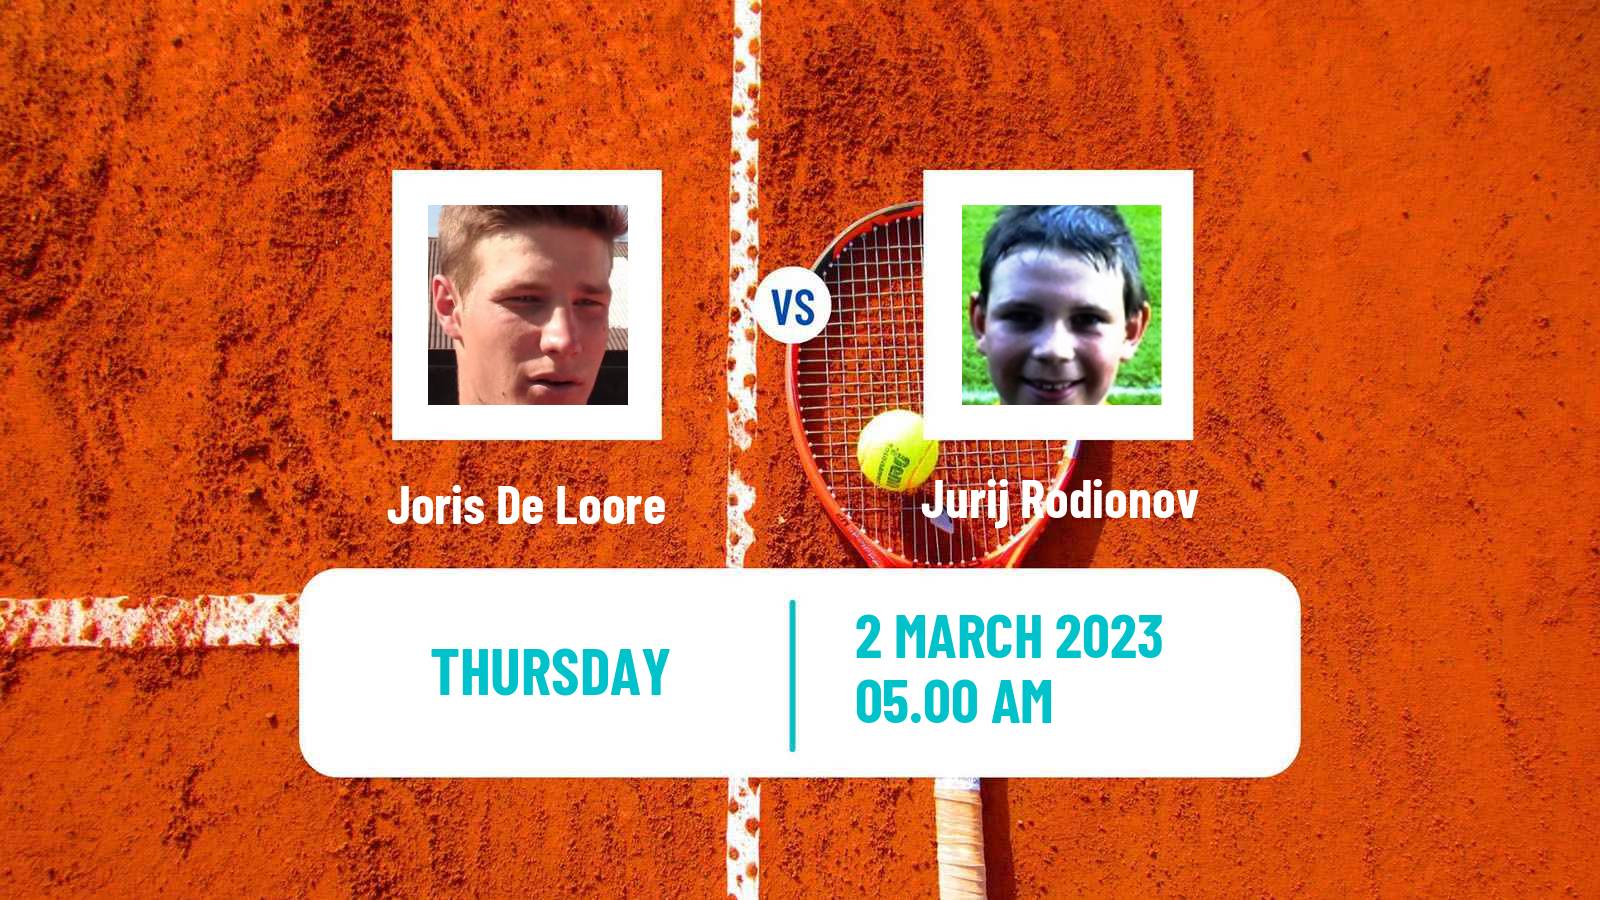 Tennis ATP Challenger Joris De Loore - Jurij Rodionov